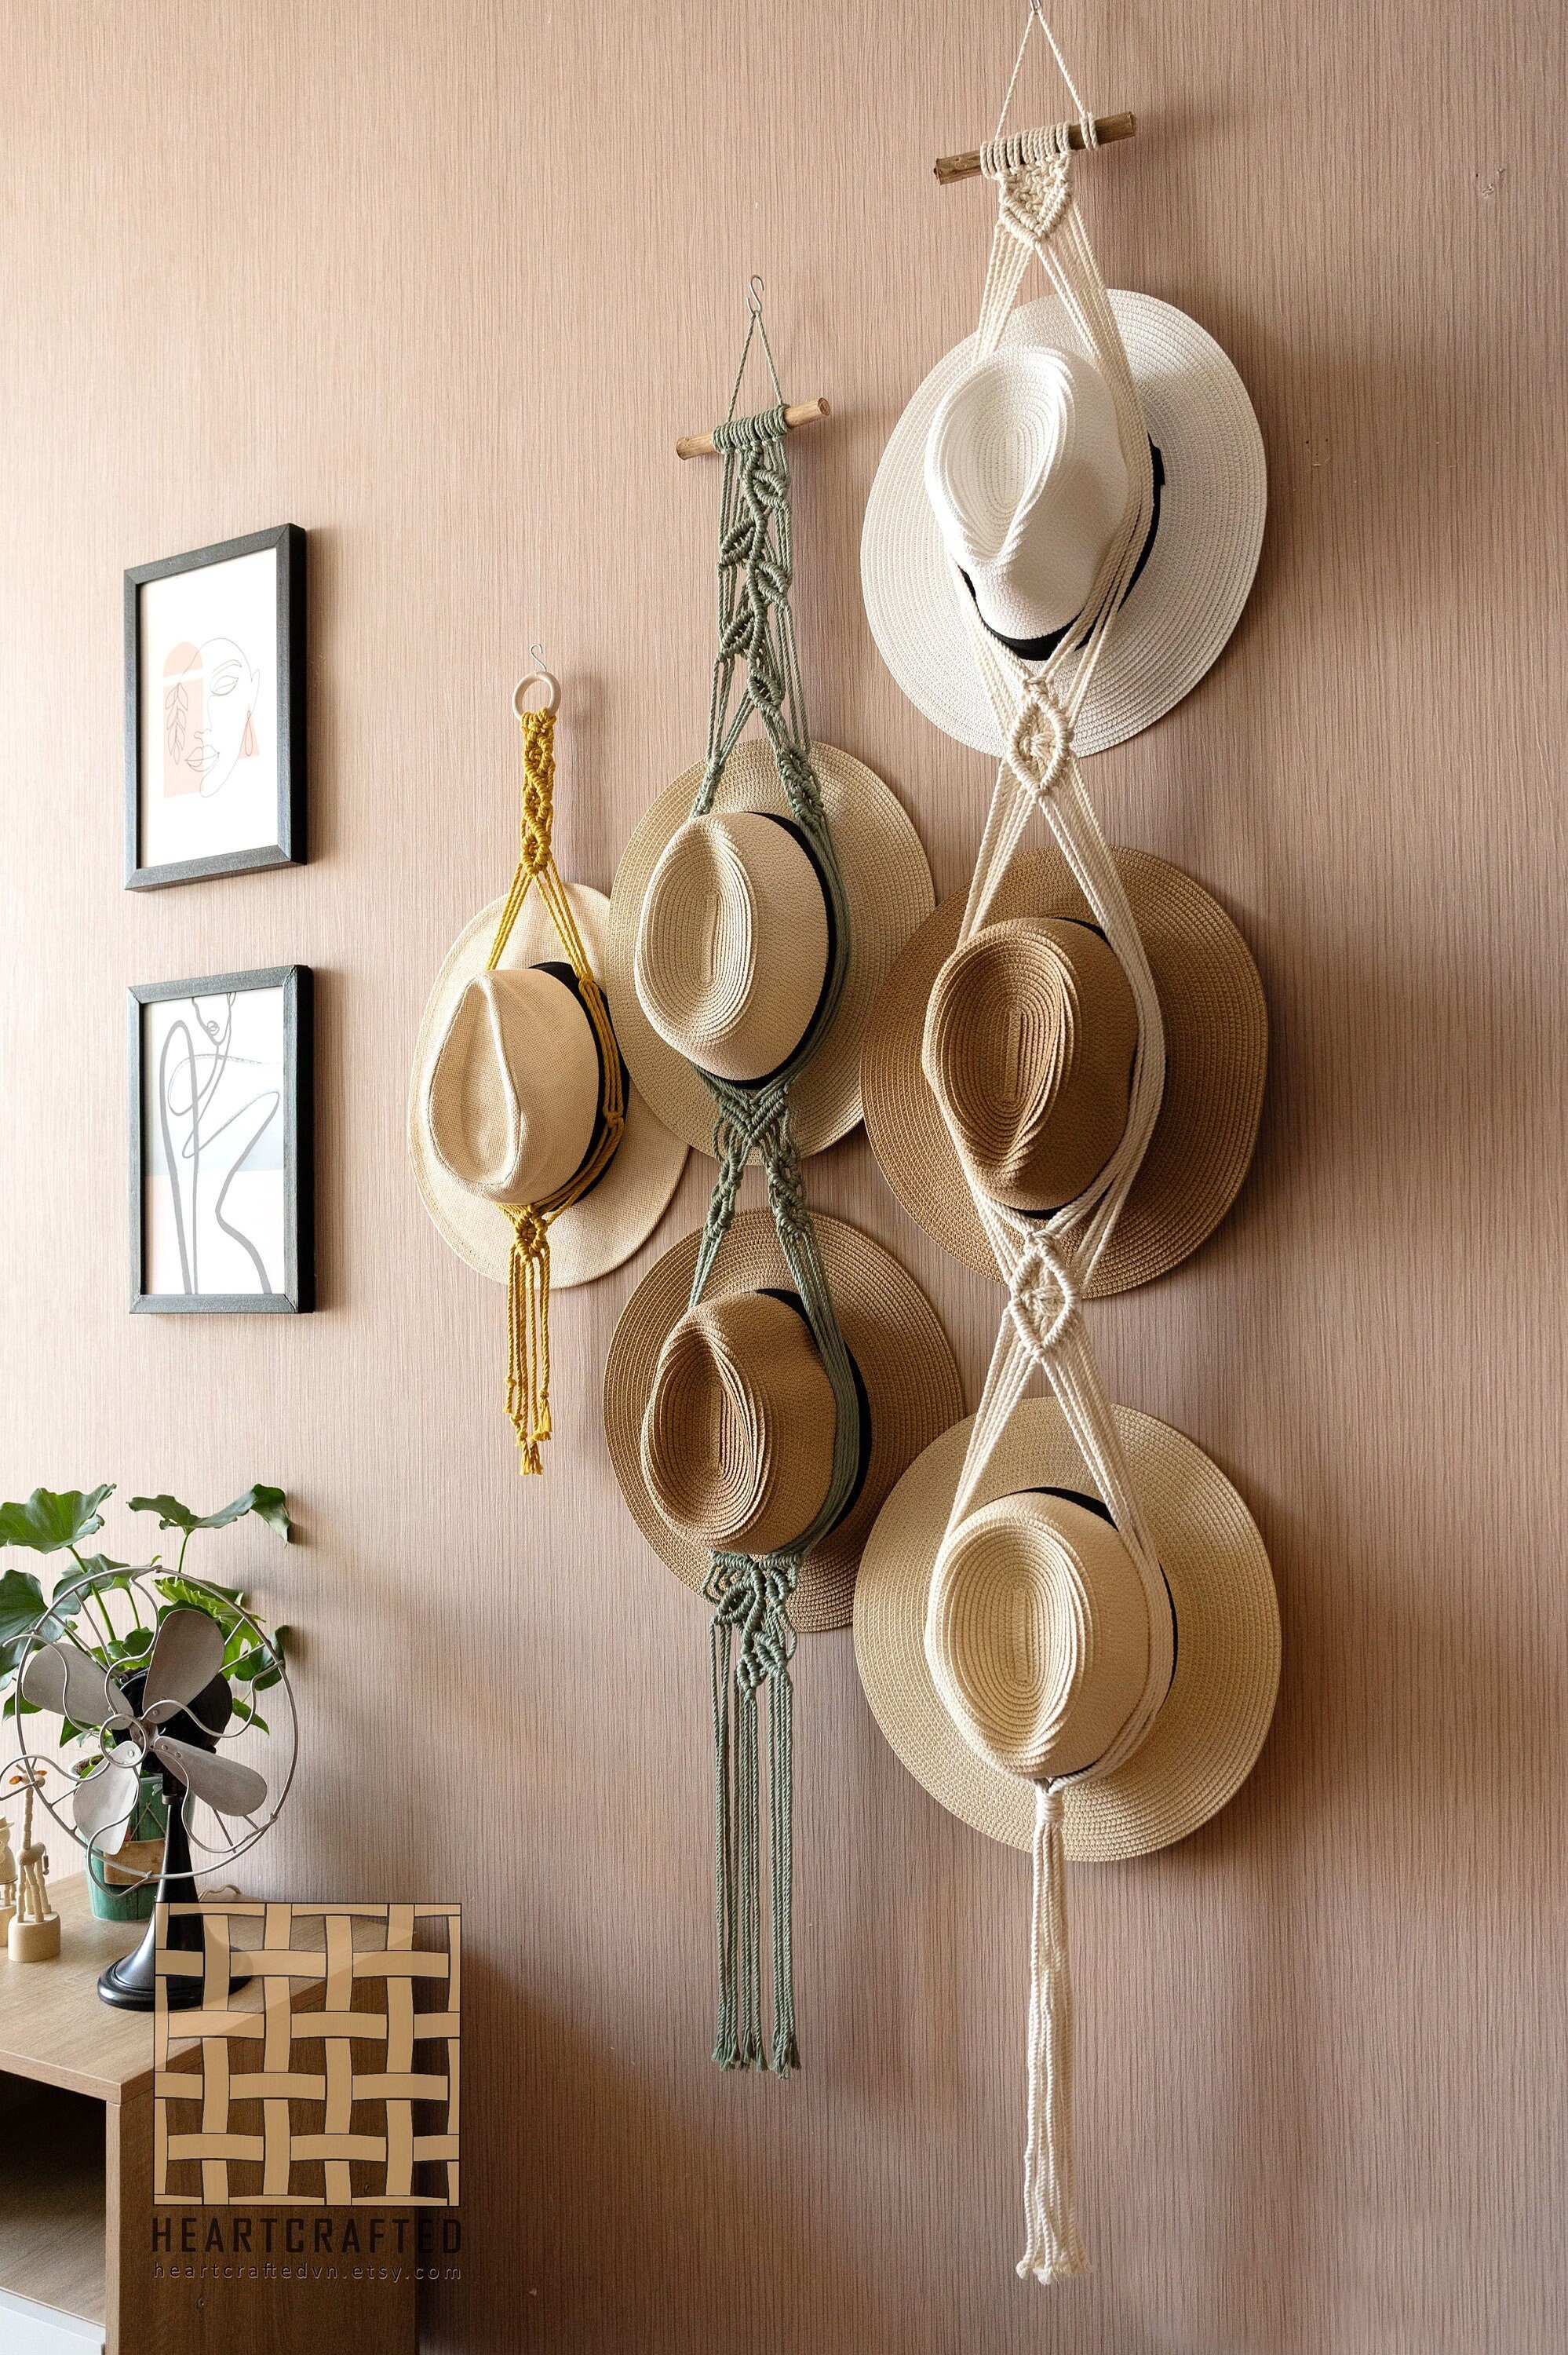 Chapeau à accrocher au mur et décoration naturelle bohème chic